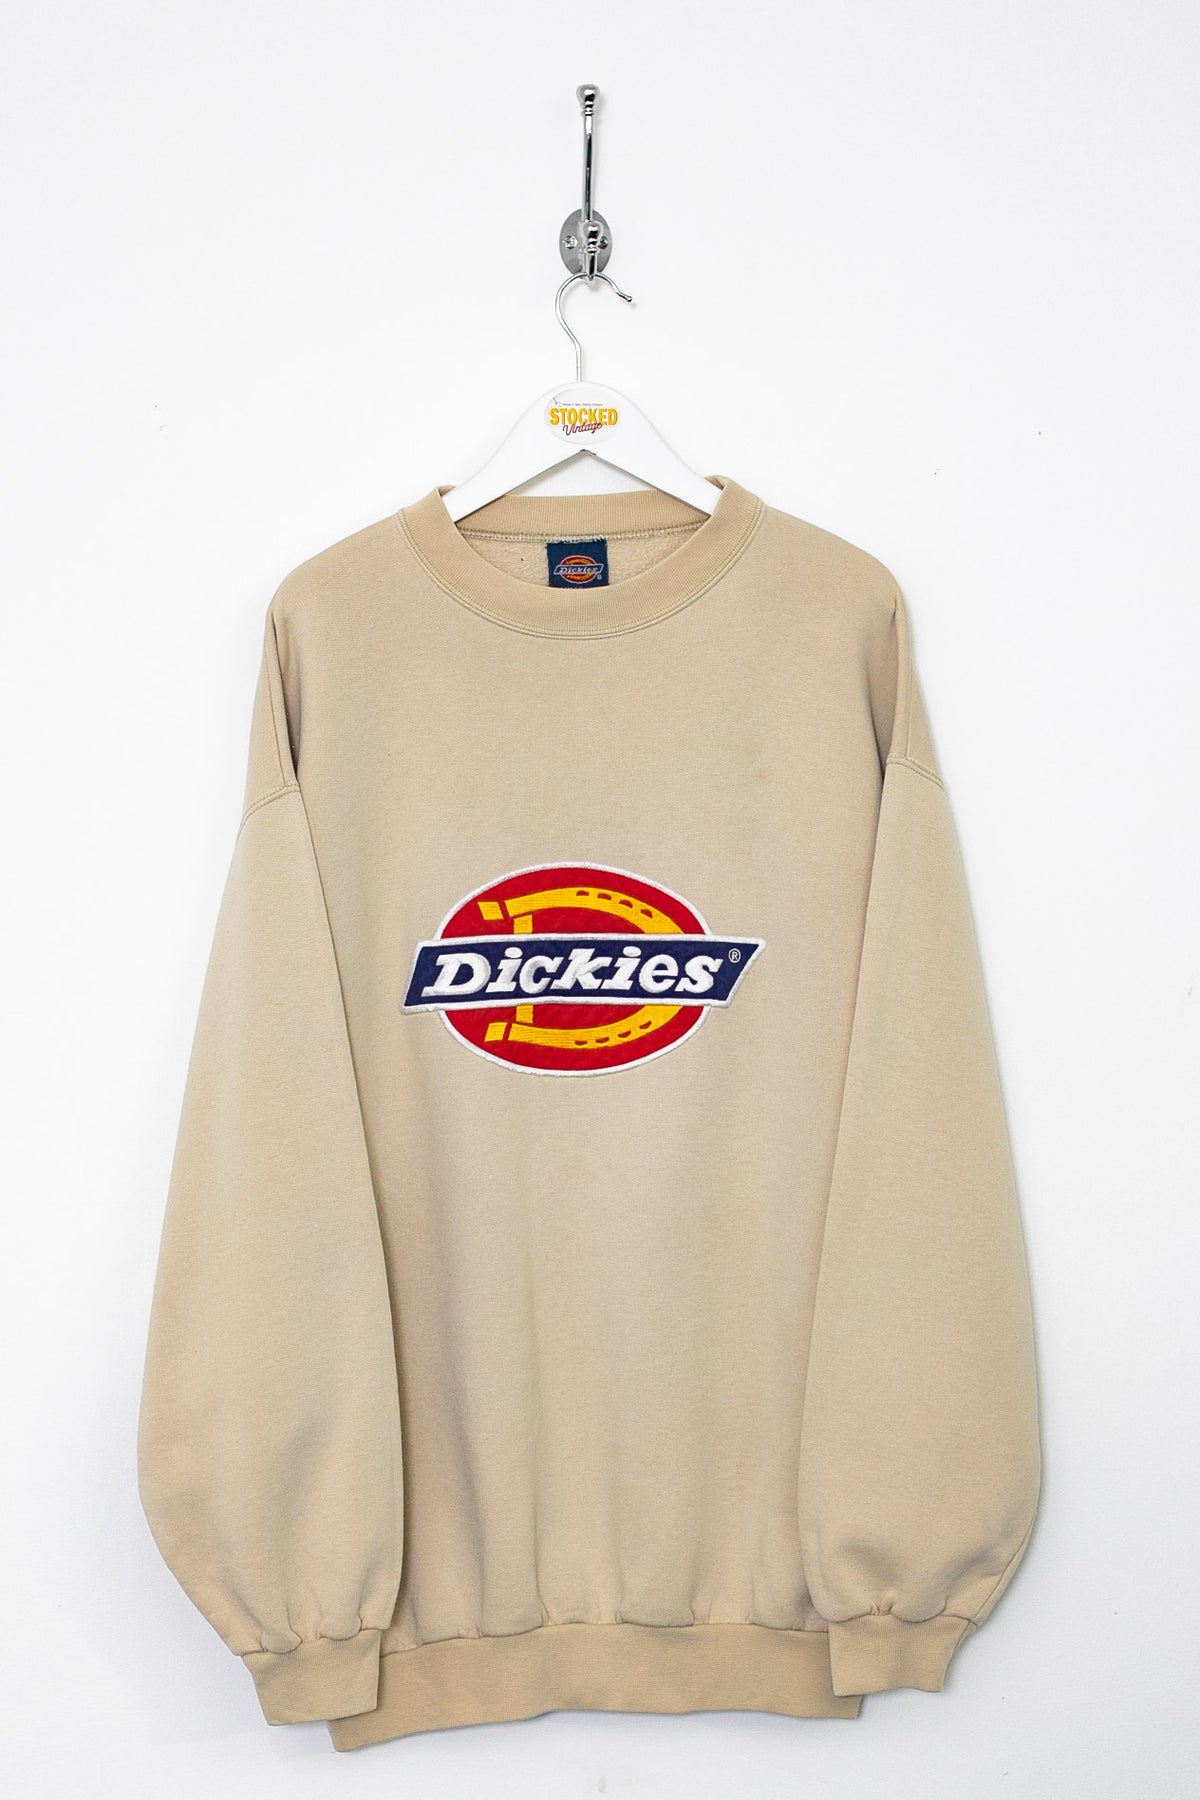 00s Dickies Sweatshirt (L)